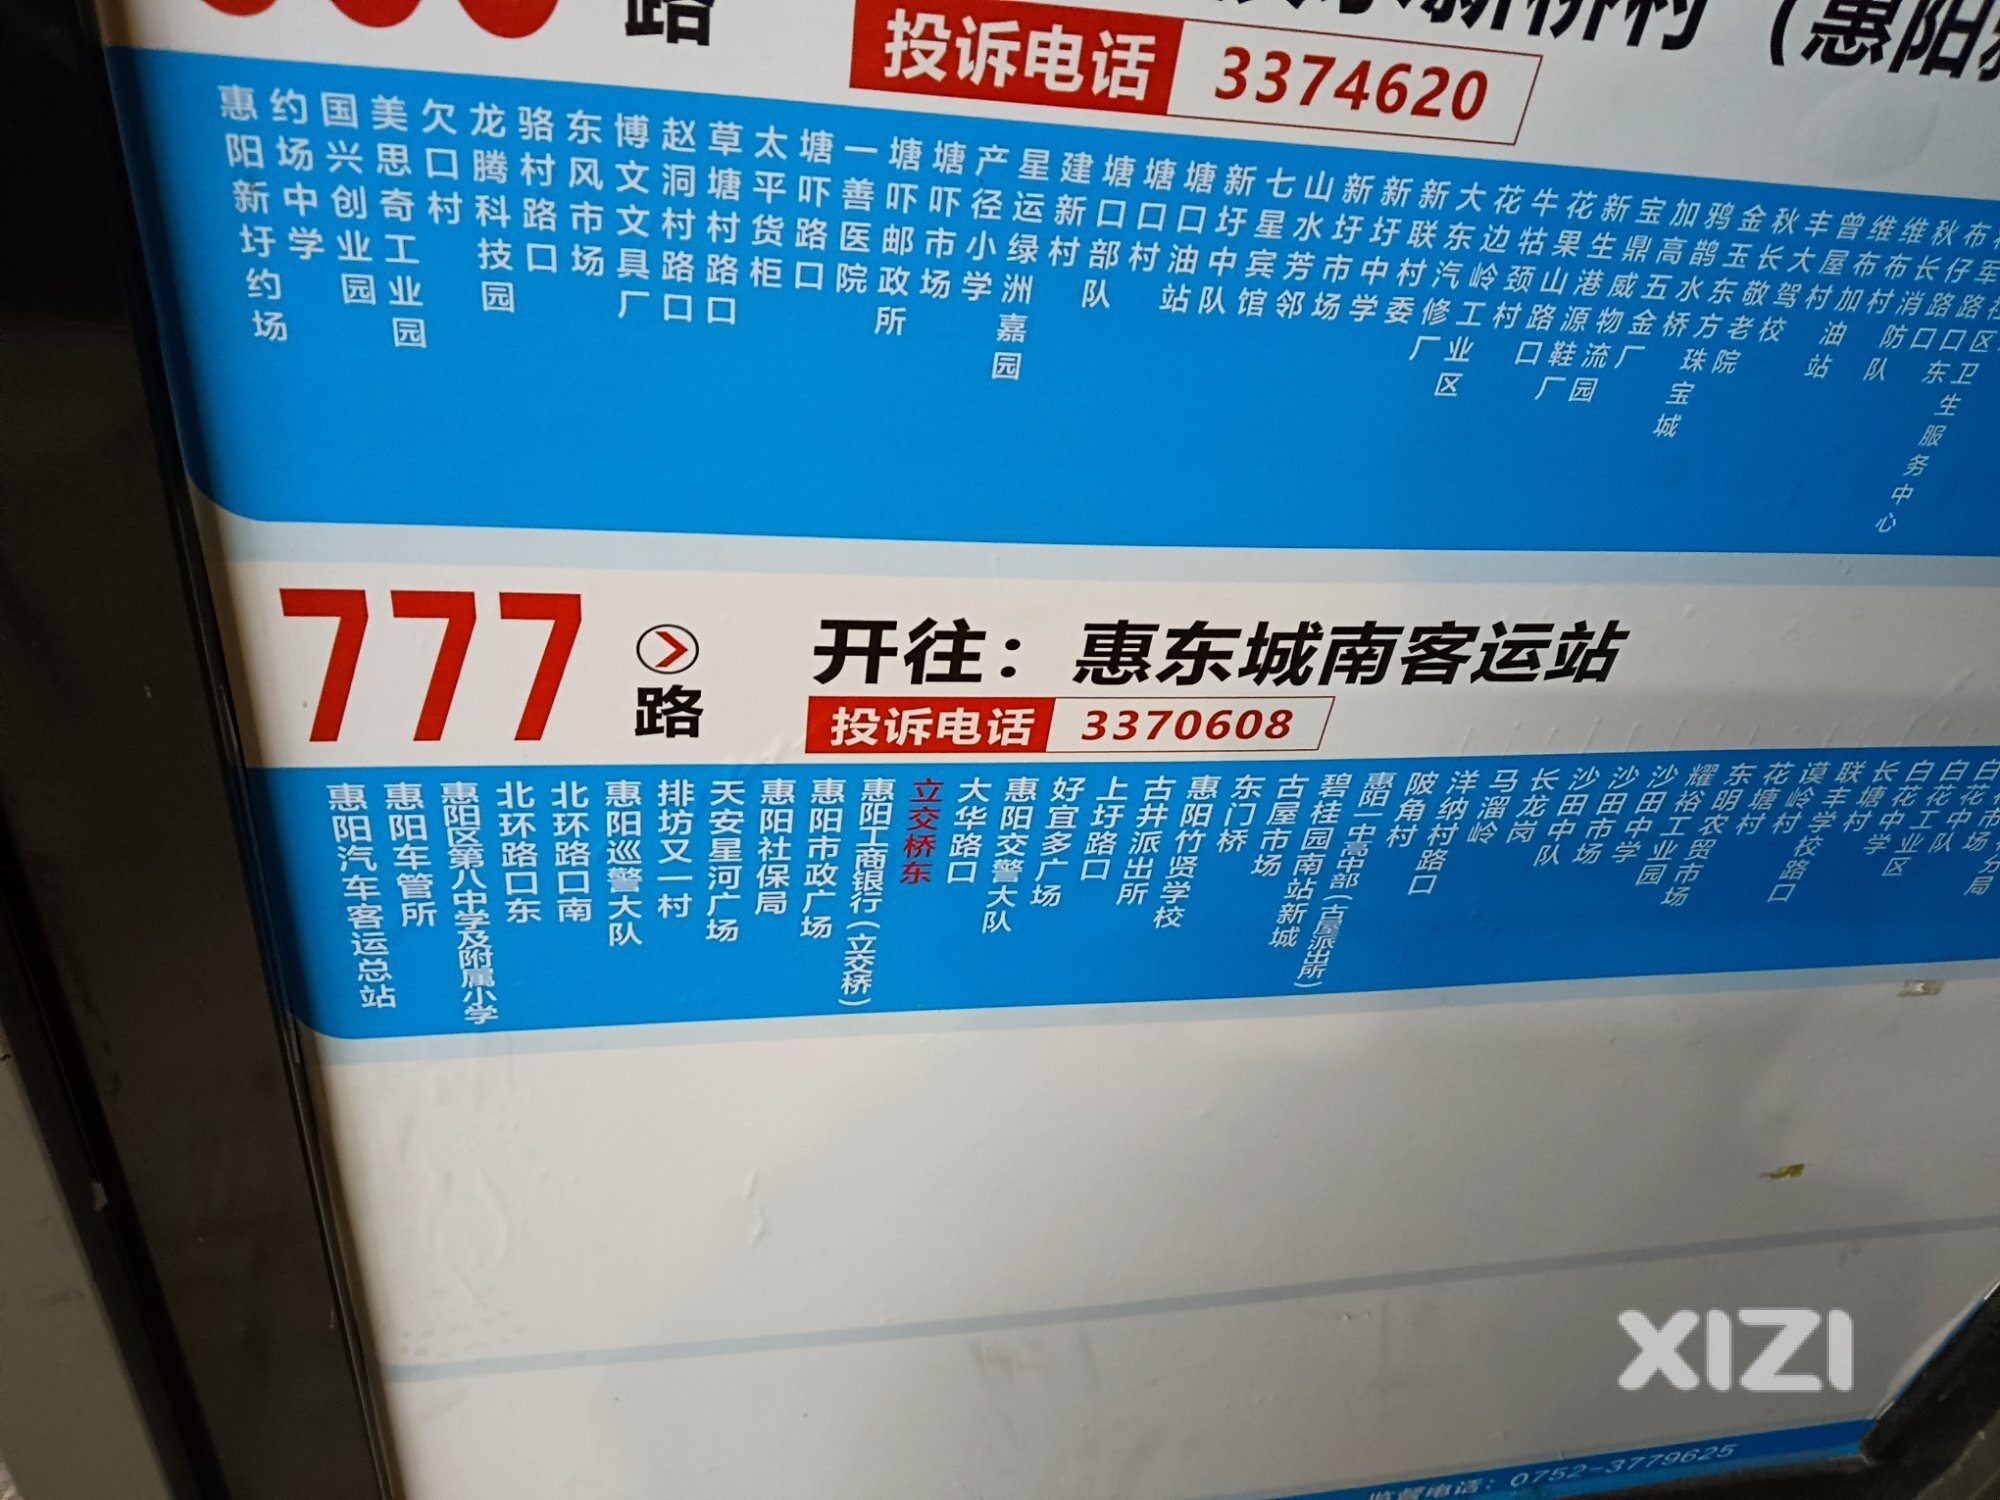 777路往惠阳汽车总站的这些站点全部取消才对。调整到沙田地铁站